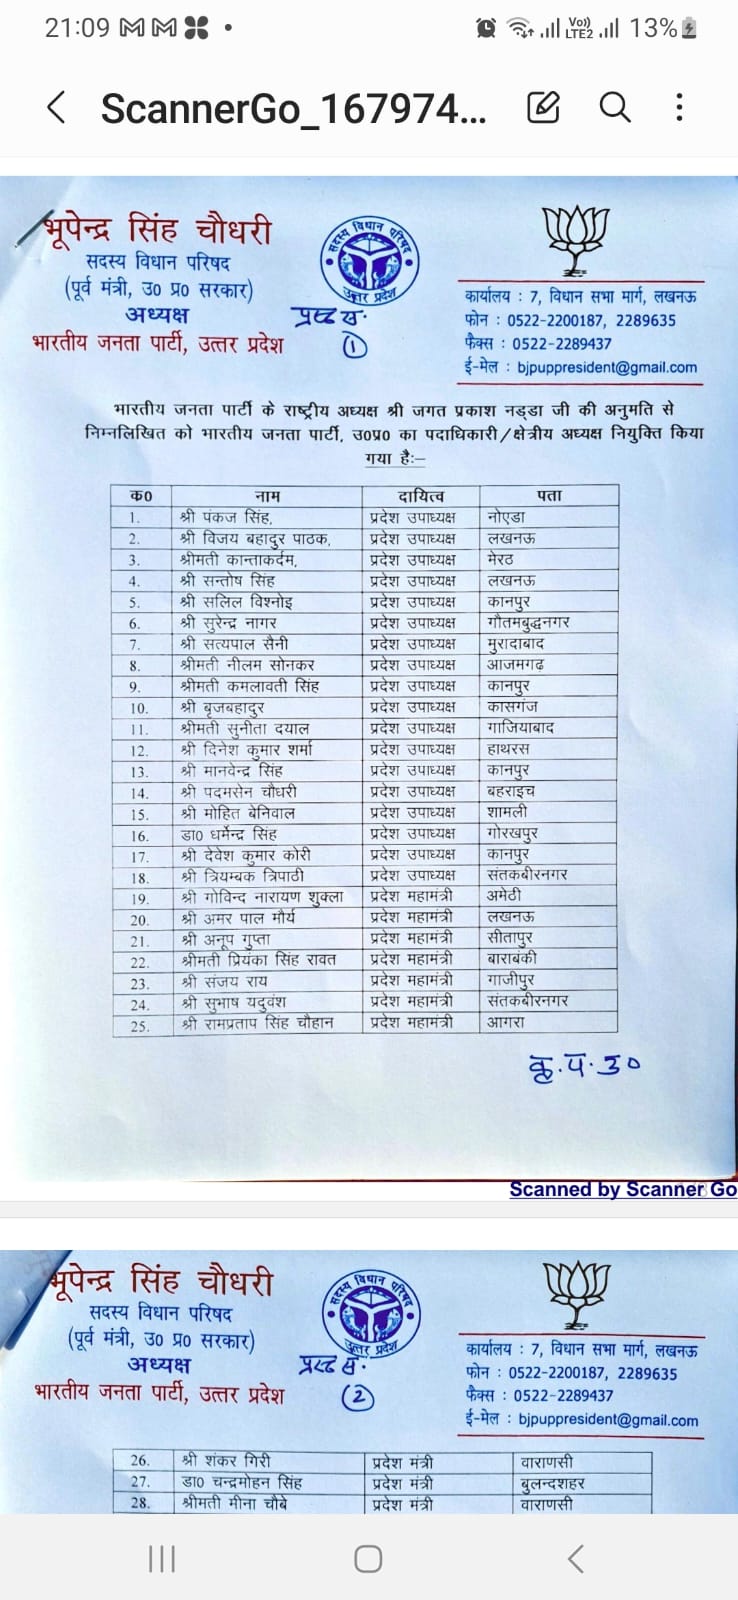 भाजपा के प्रमुख प्रदेश पदाधिकारियों की सूची .